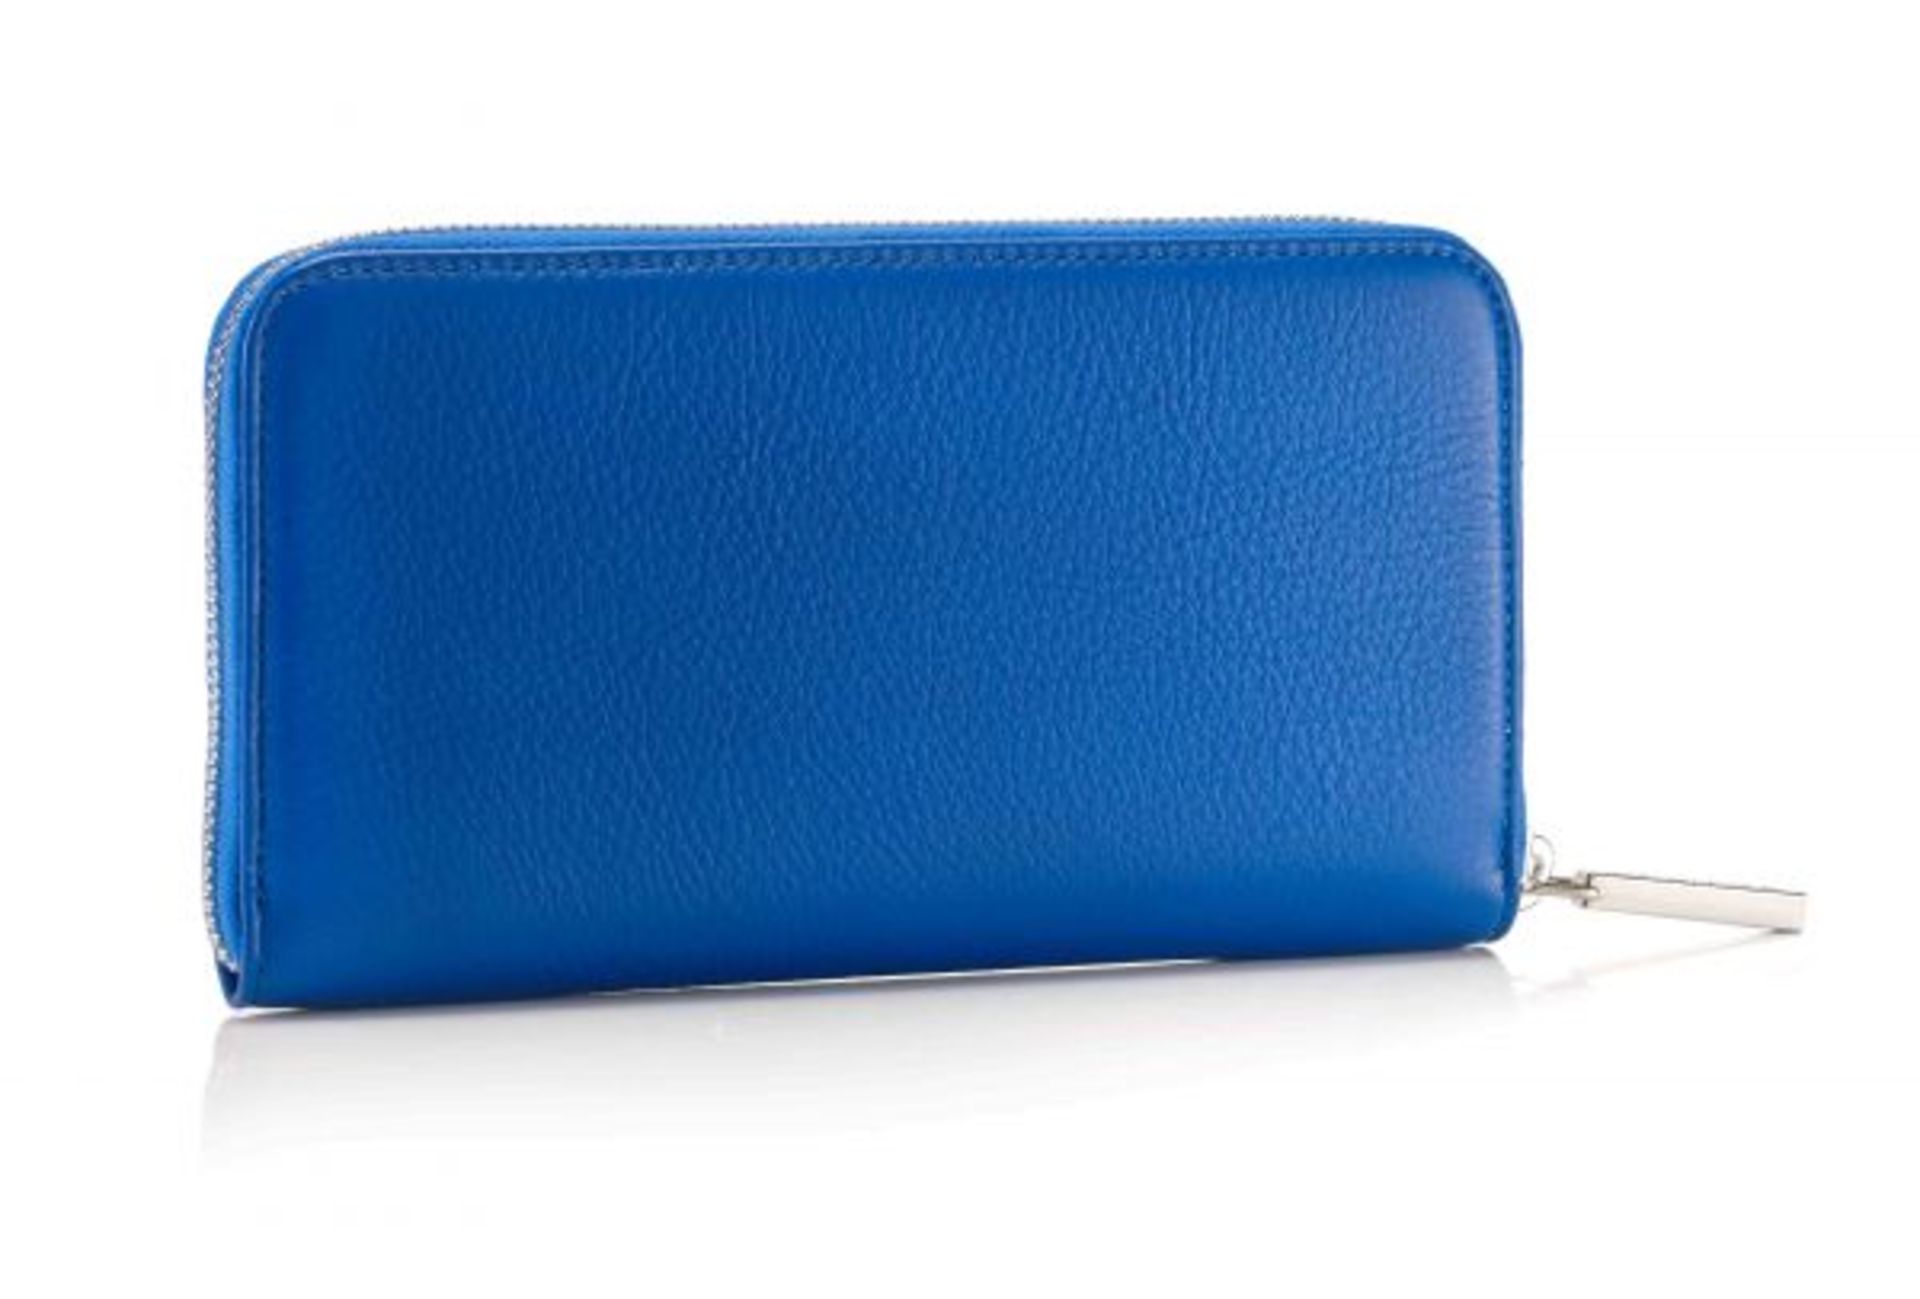 LONG CLASSIC ZIPPED WALLET LONG CLASSIC ZIP WALLET RRP £225.00 The classic leather zip wallet, has